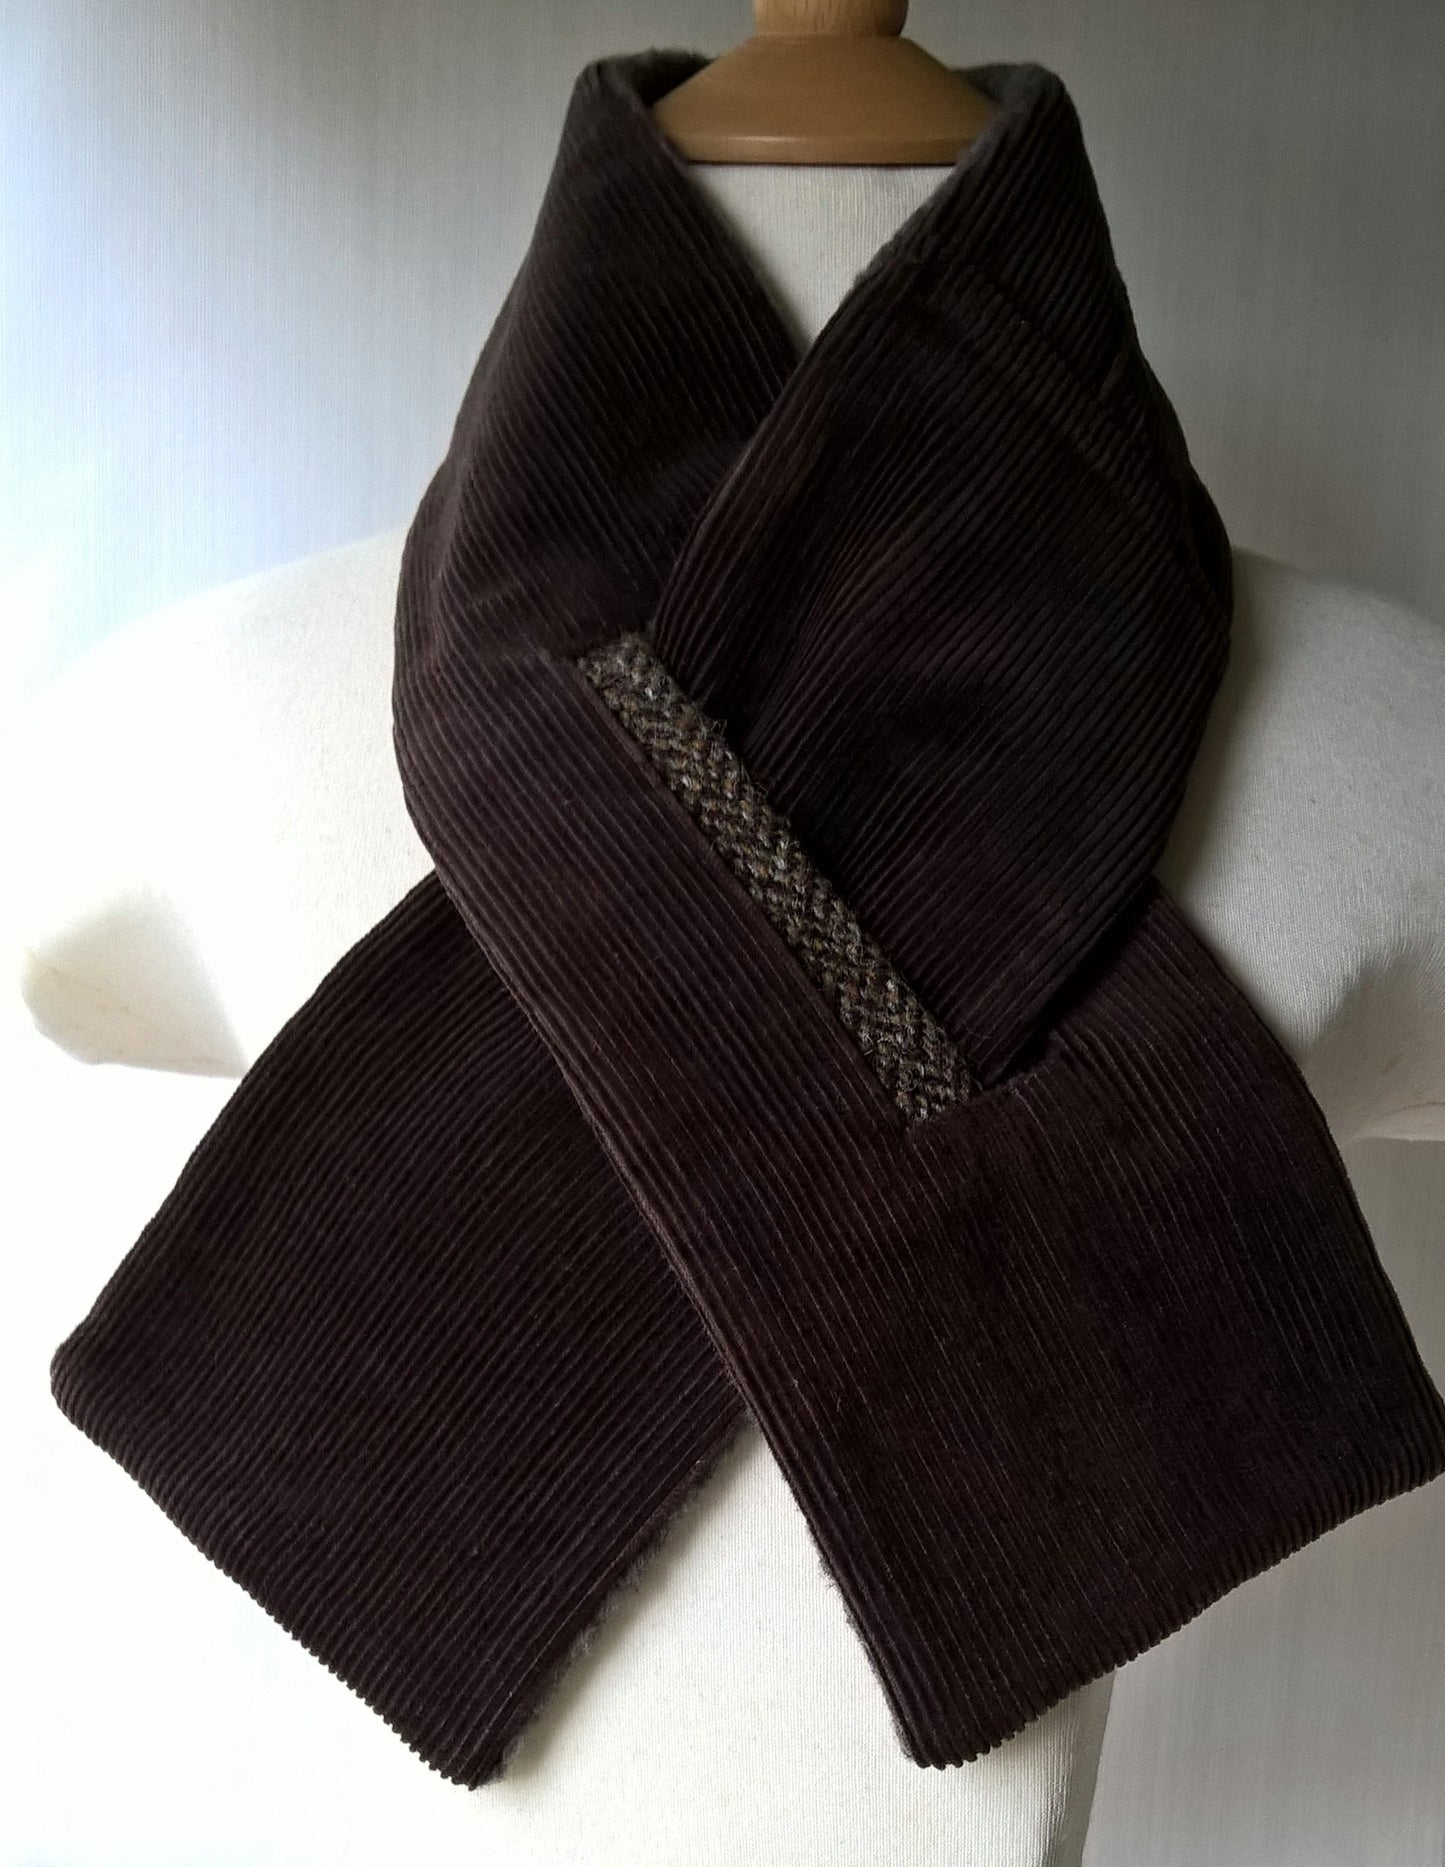 Brown corduroy fleece lined cravat with harris tweed trim